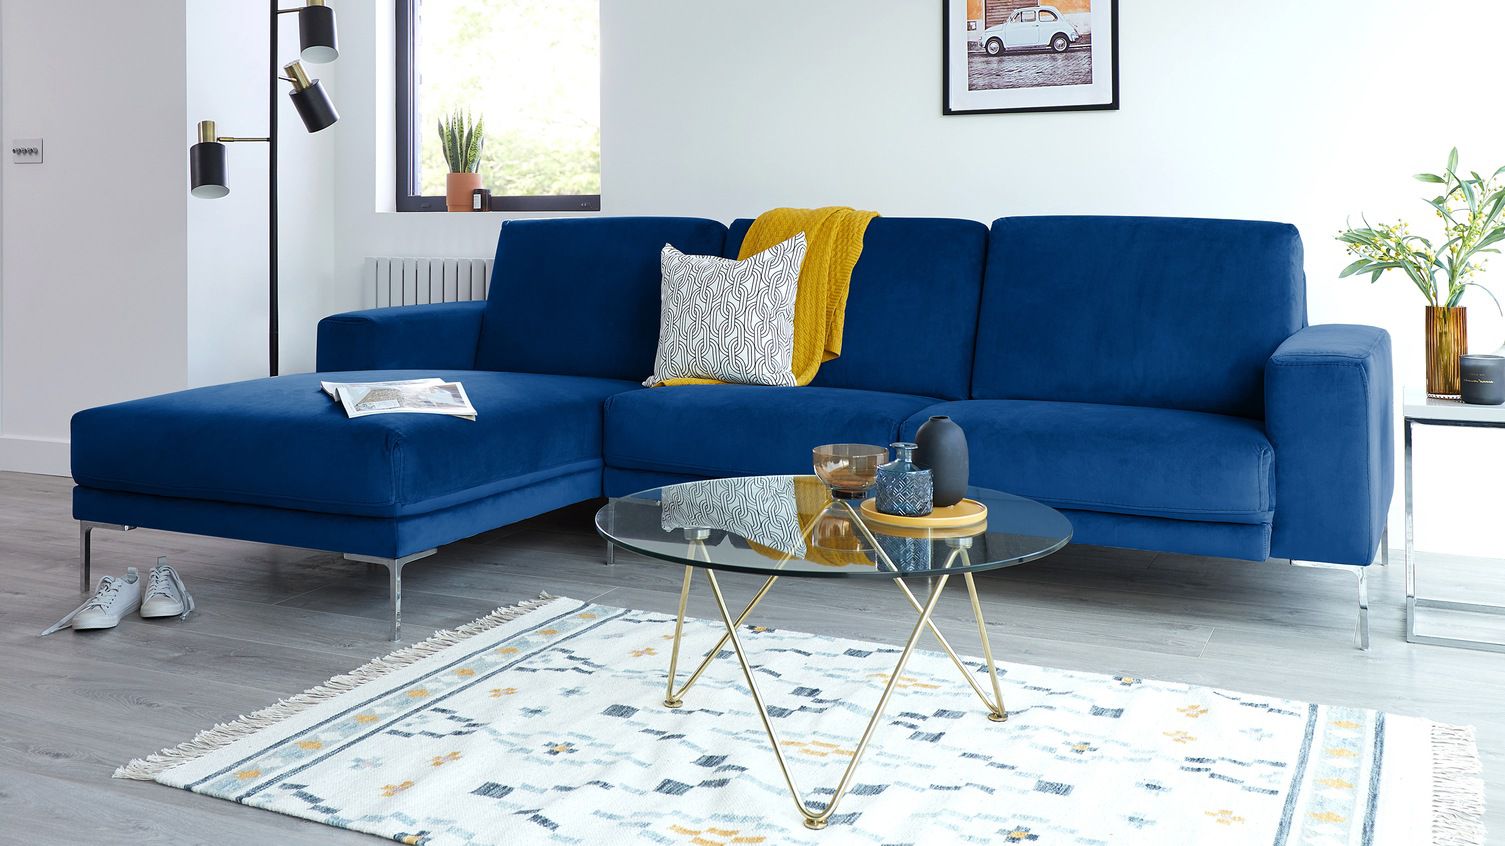 Đóng ghế sofa giá rẻ Hà Nội theo yêu cầu và cách để bảo dưỡng ghế